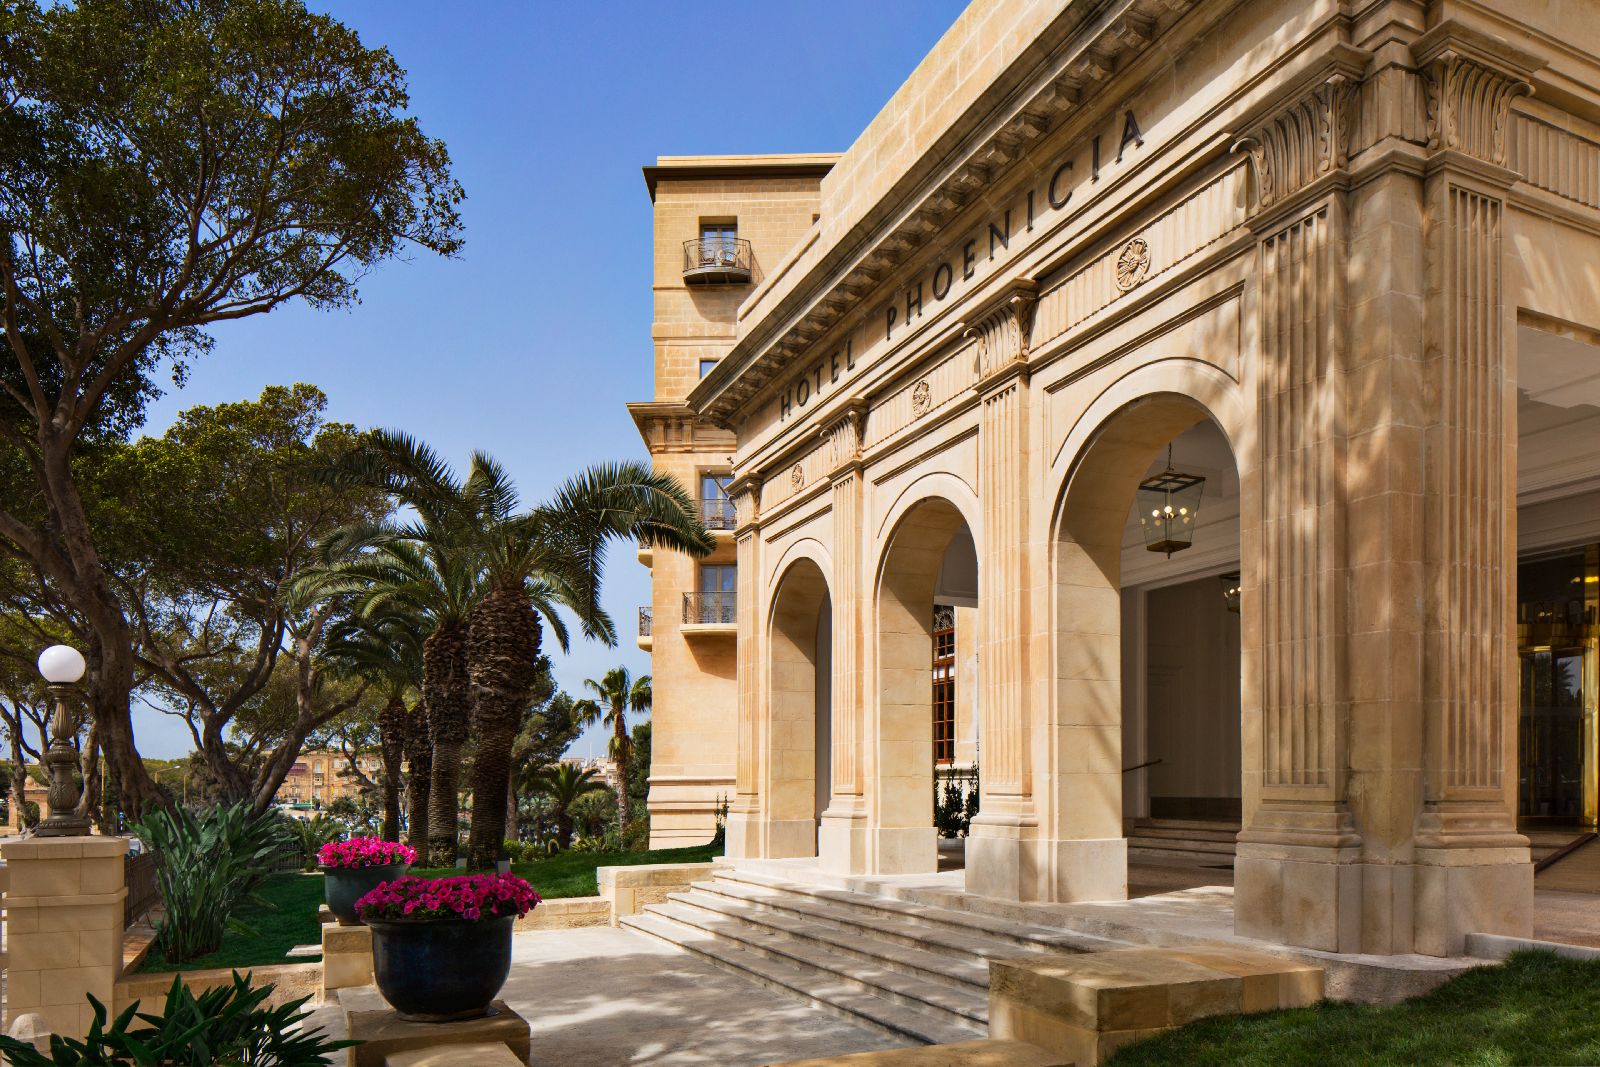 Grand entrance to The Phoenica Malta hotel in Valletta